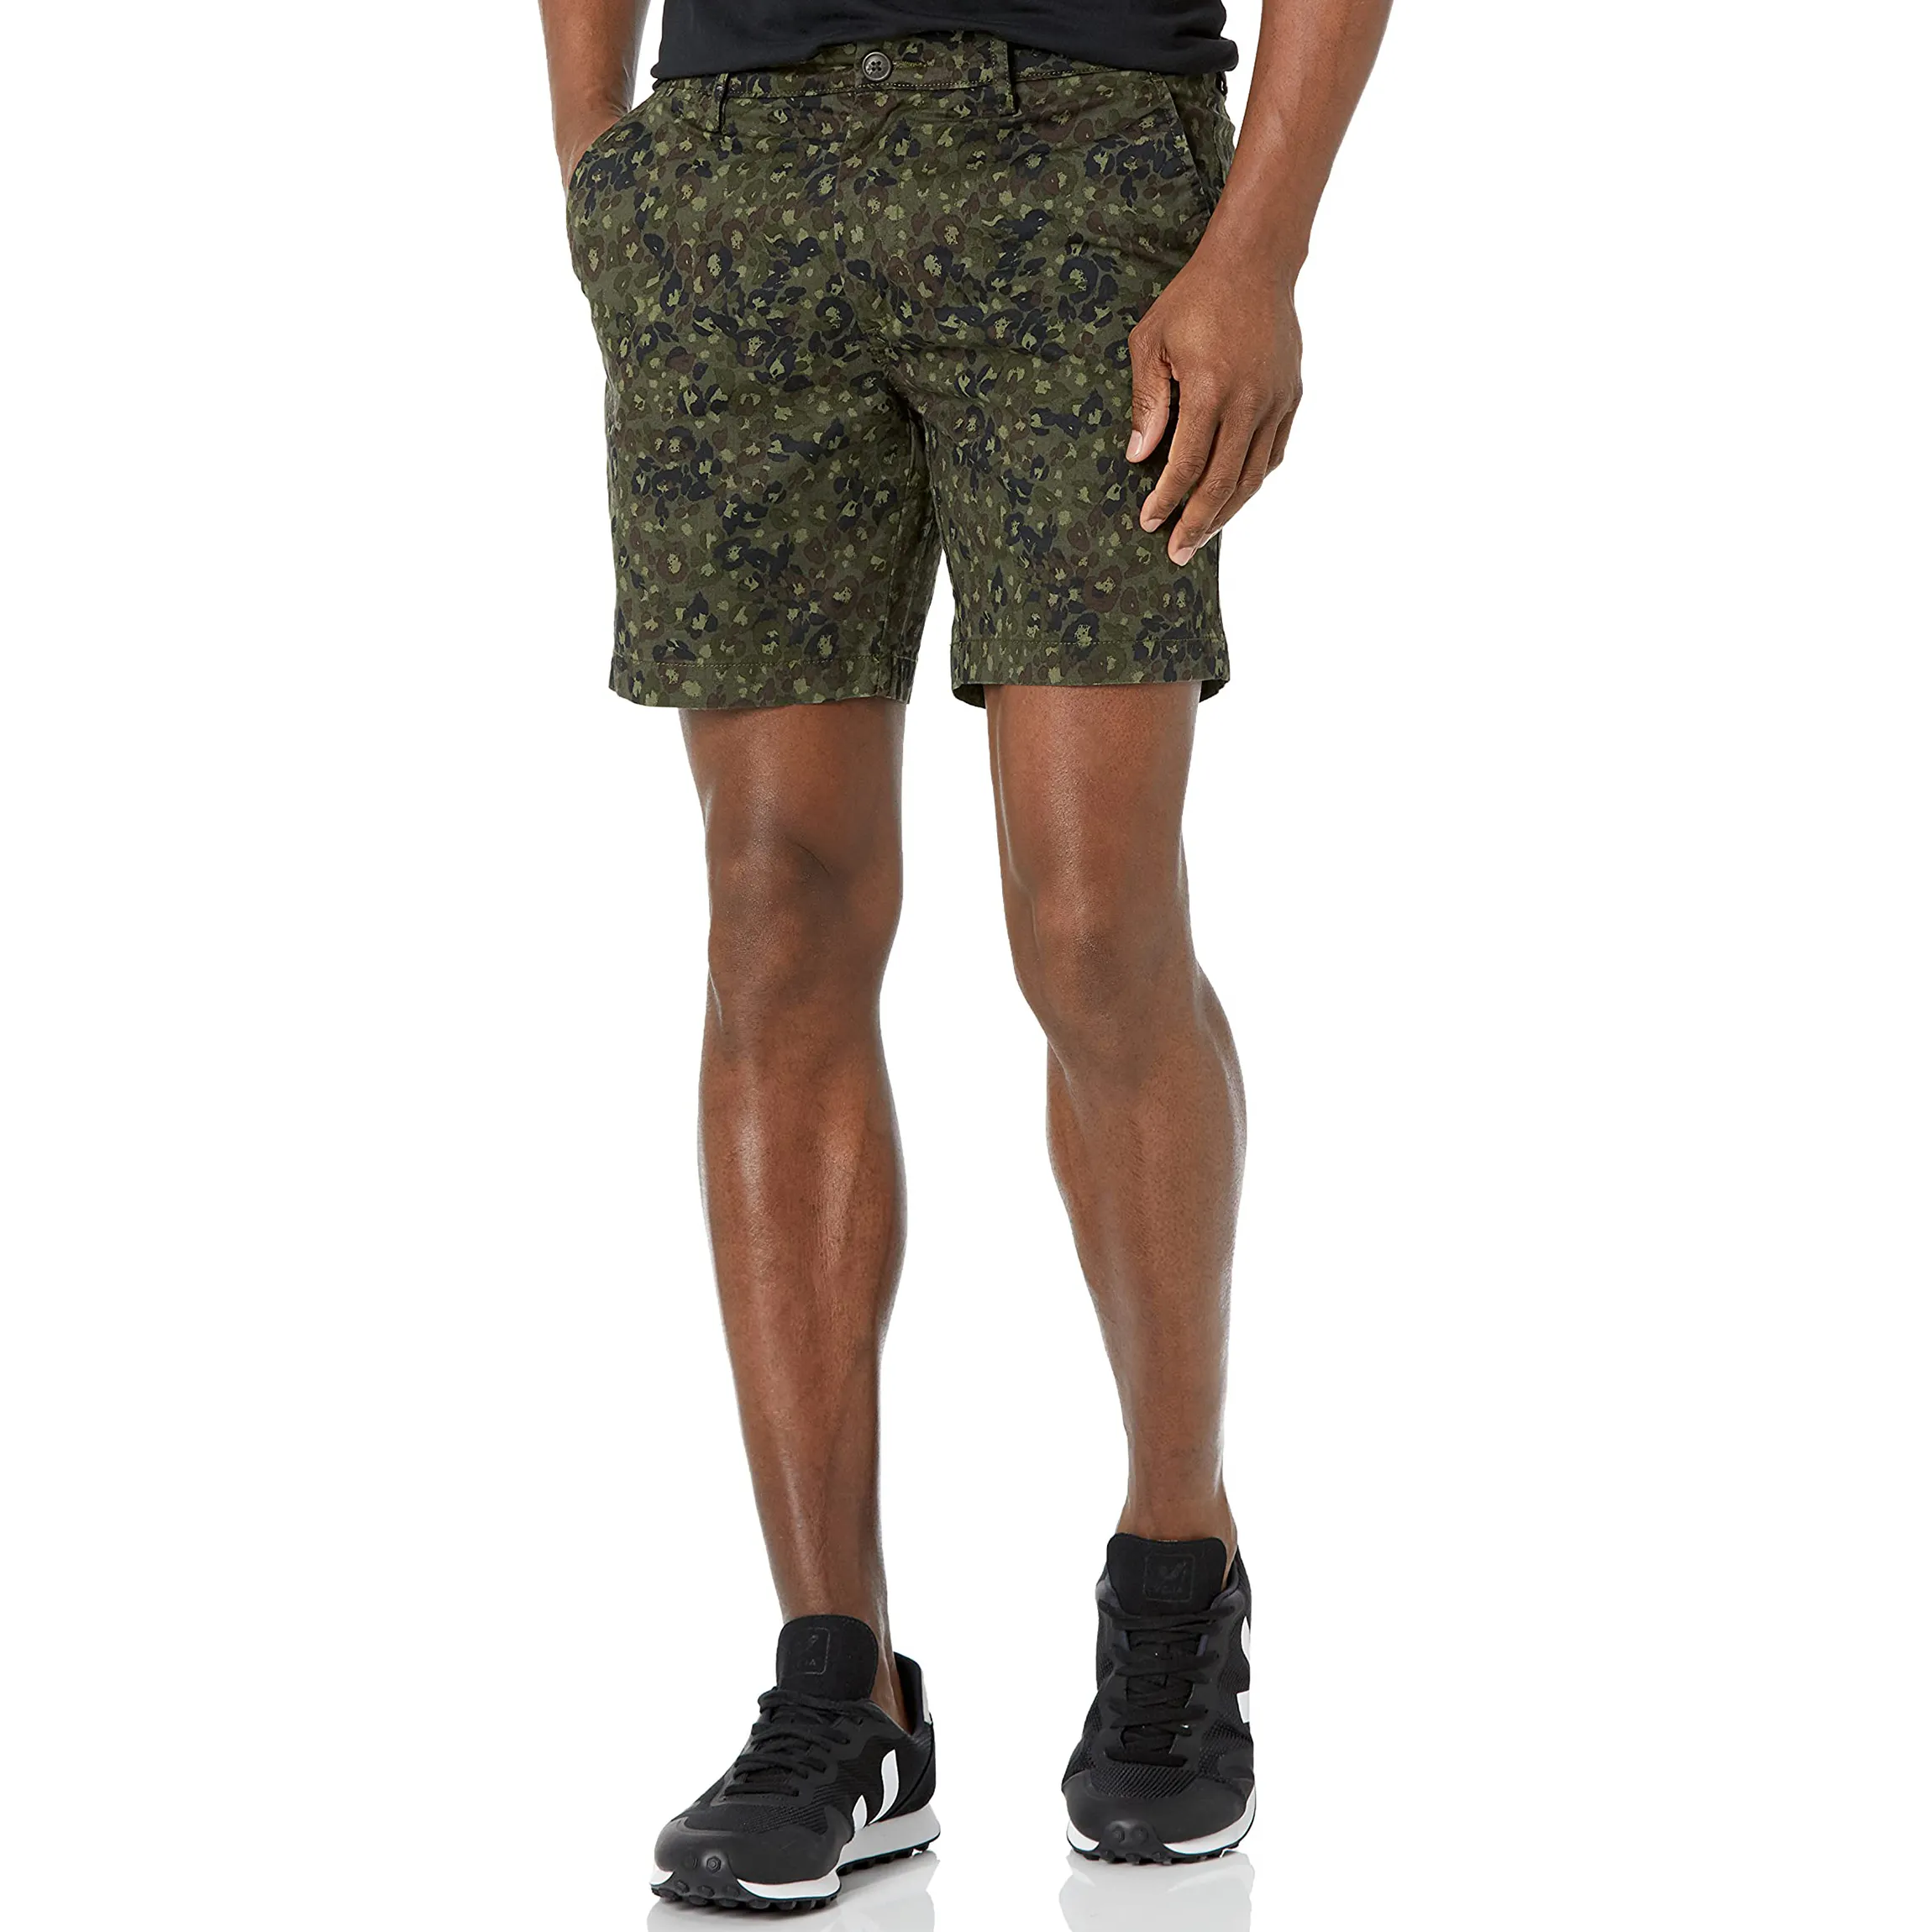 Completo Design personalizzato sublimazione stampato a basso prezzo Casual Shorts produttore OEM servizio di vendita caldo migliori Shorts per gli uomini